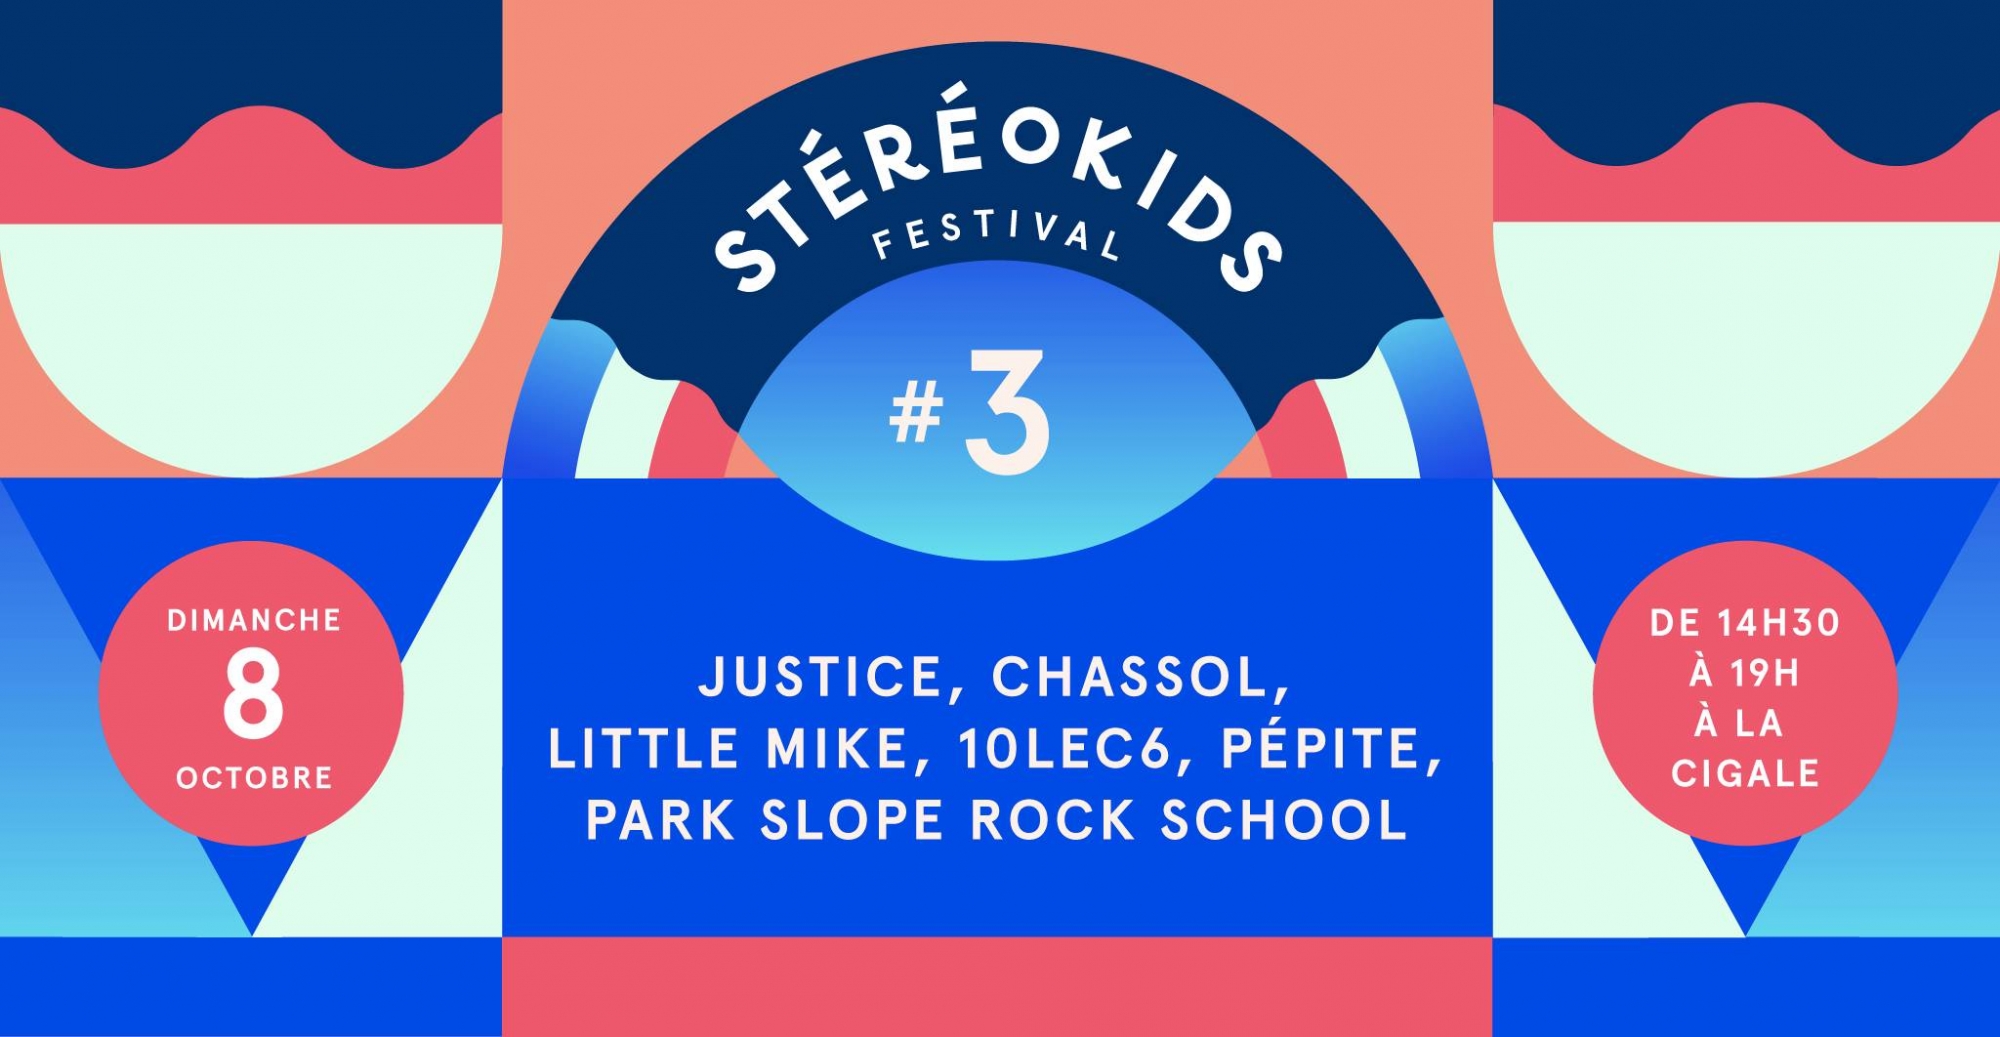 Justice à la 3ème édition du Stéréokids Festival à La Cigale le 8 octobre 2017